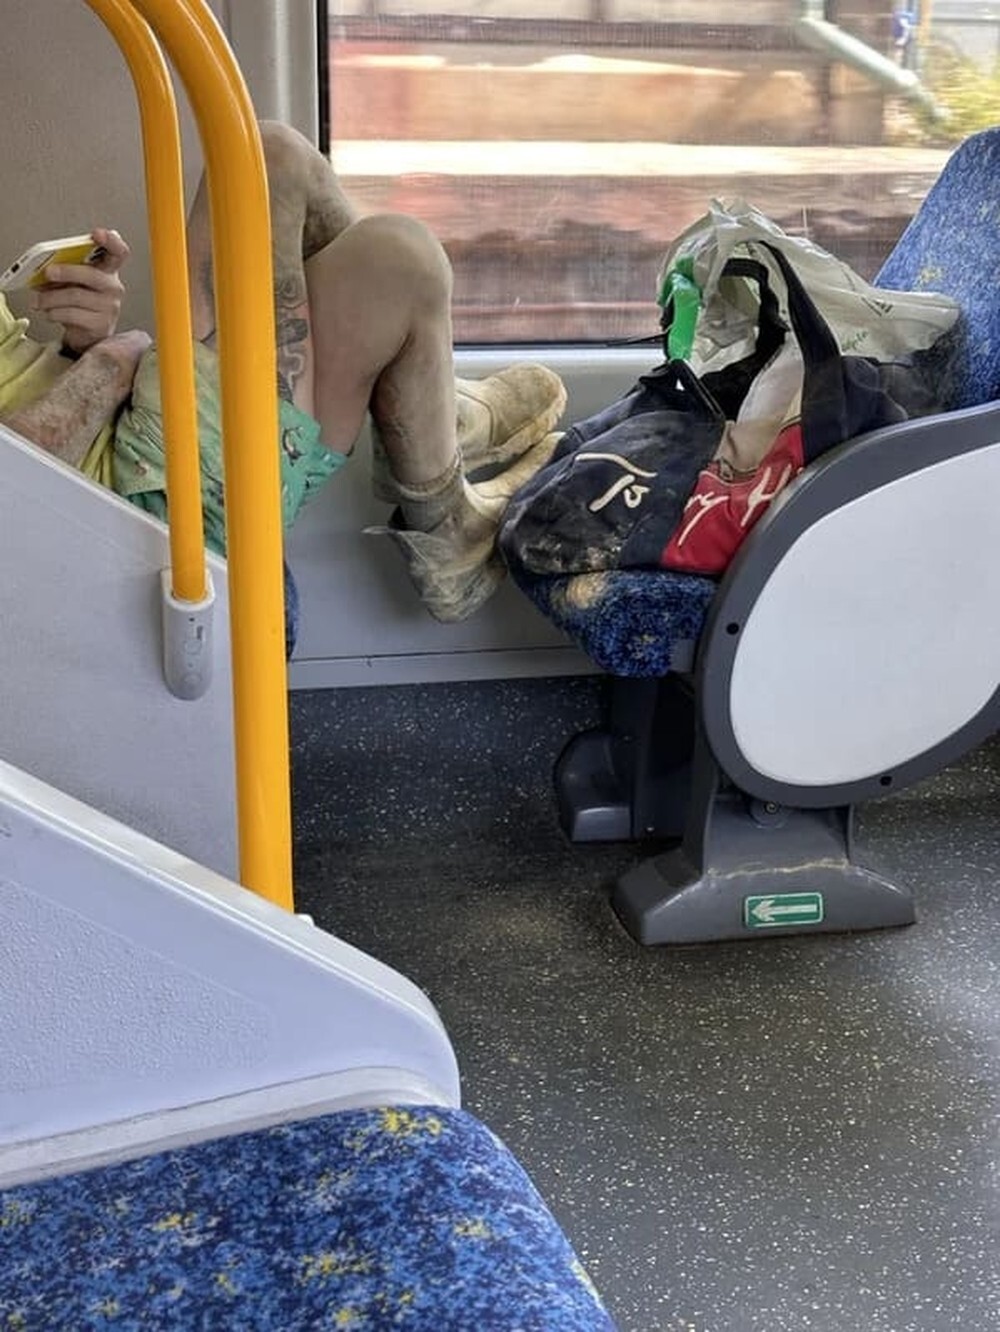 1. «Этот чел поставил свои грязные ноги на сиденье в поезде, смотрит Нетфликс на полную громкость и курит вейп»